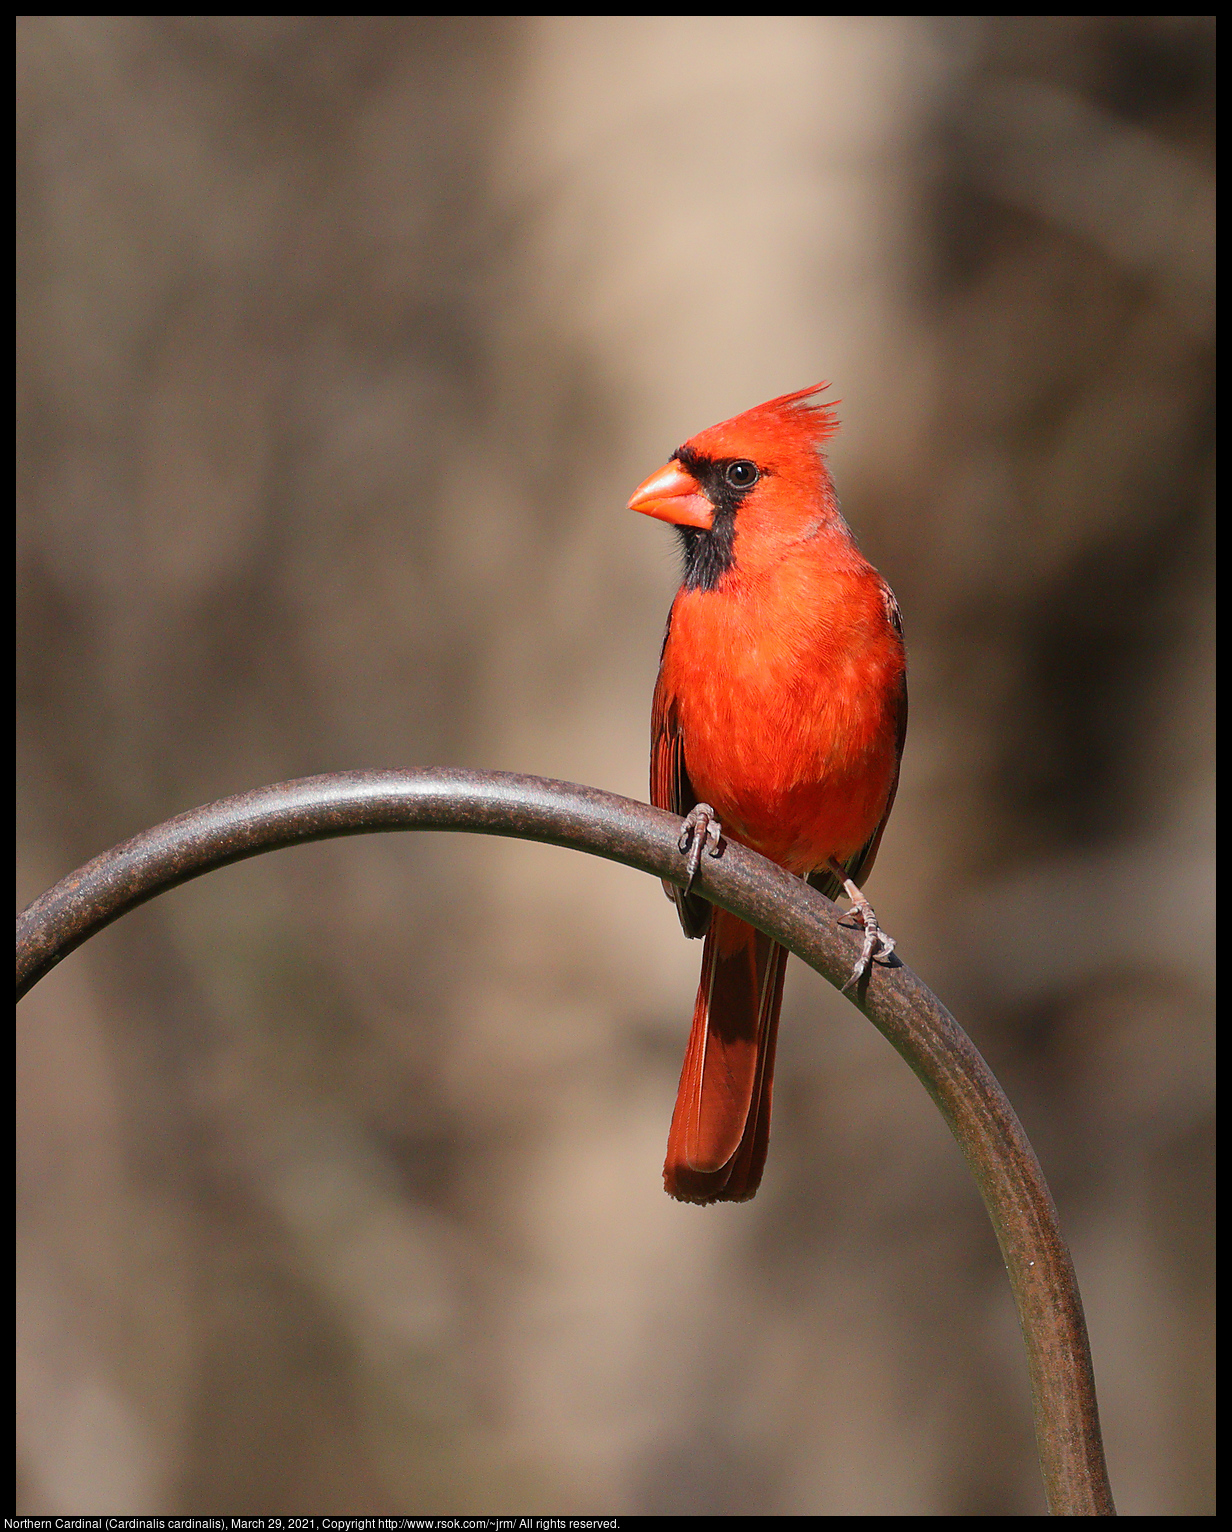 Northern Cardinal (Cardinalis cardinalis), March 29, 2021